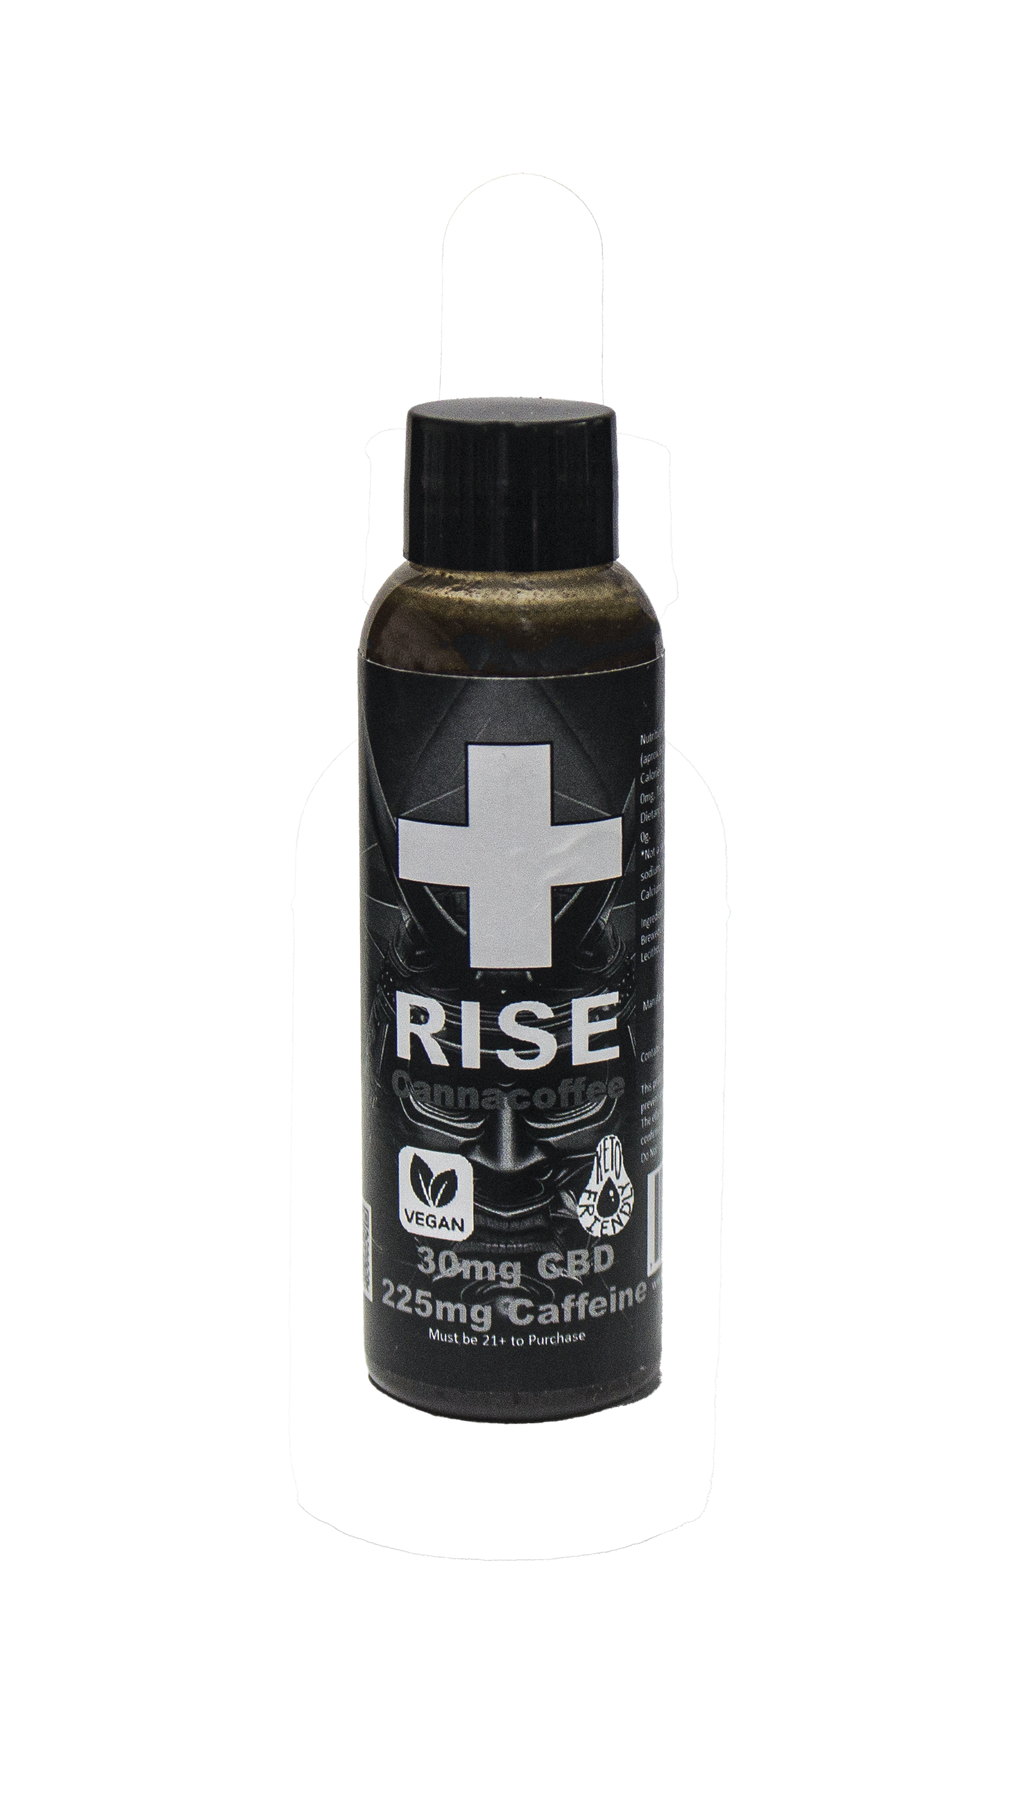 Rise Canna Coffee CBD